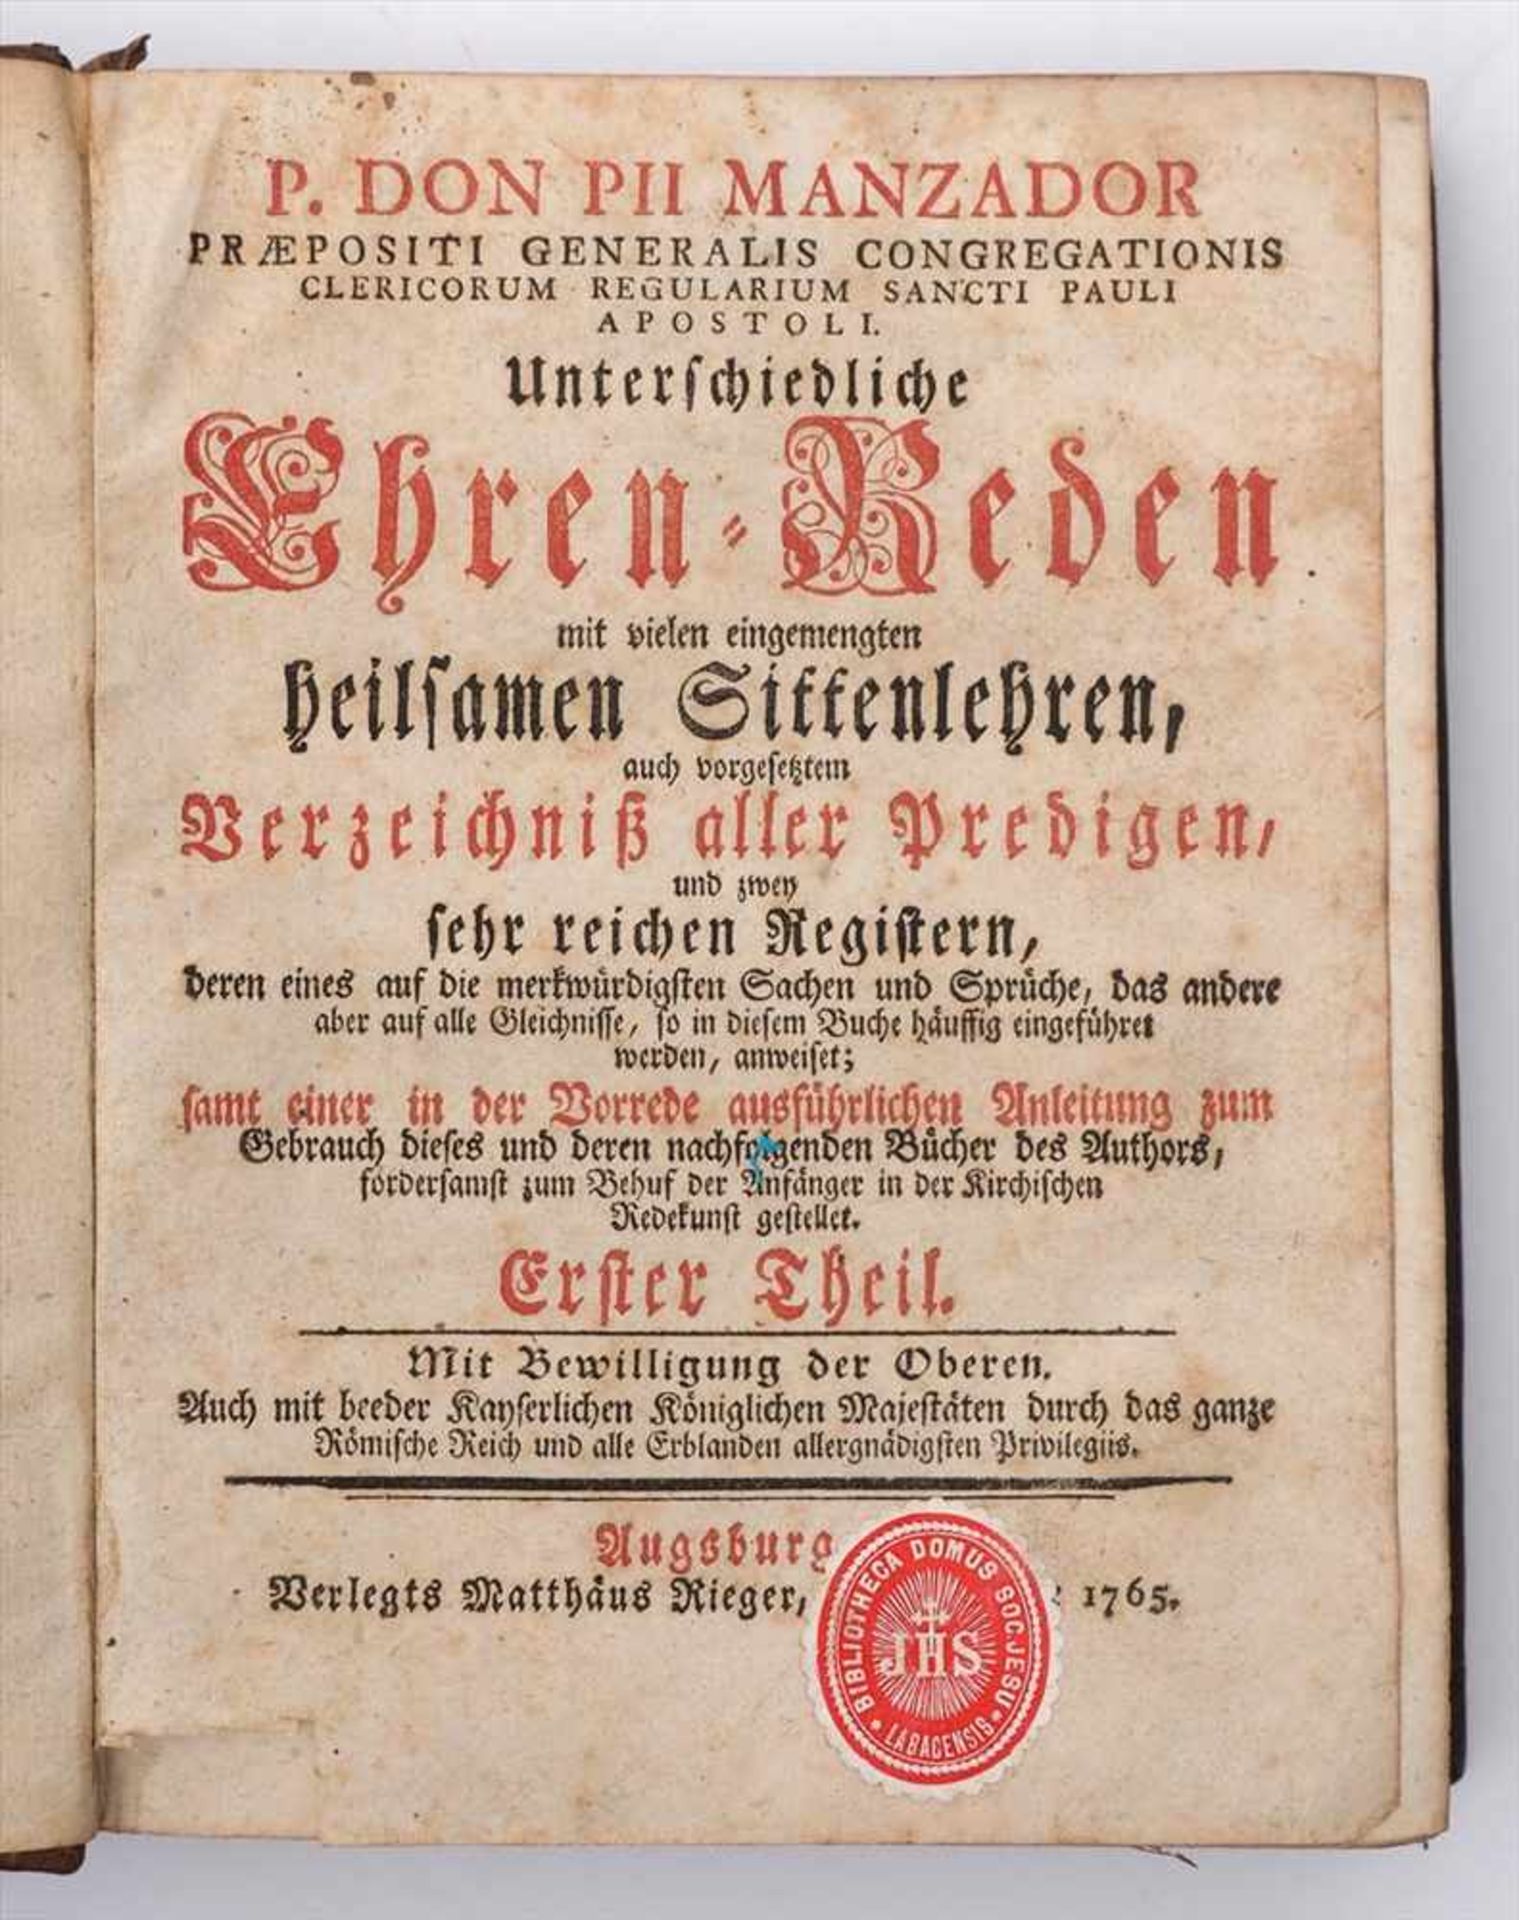 Manzador, Pius: Unterschiedliche Ehren=Reden...Zwei Bände, Matthäus Rieger, Augsburg 1862.